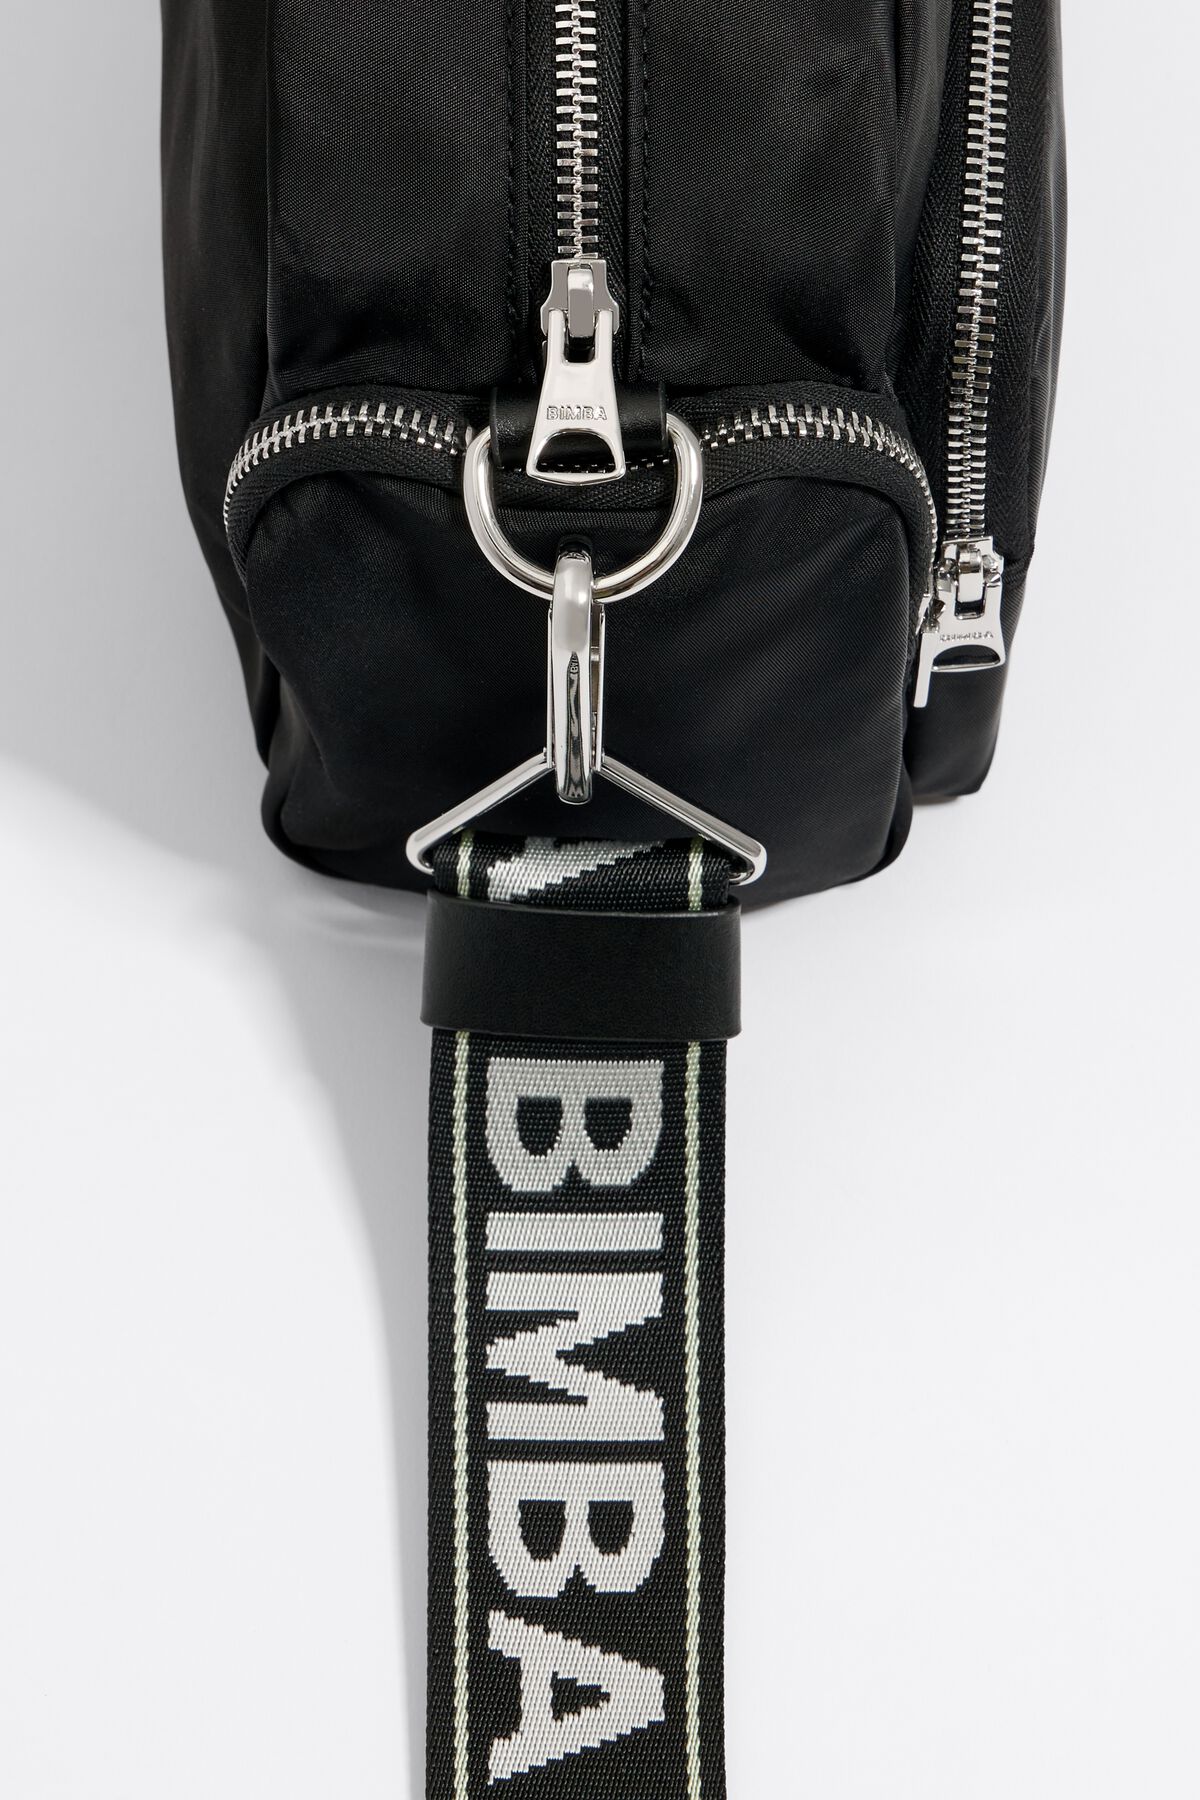 Bimba Y Lola Medium Black Nylon Crossbody Bag